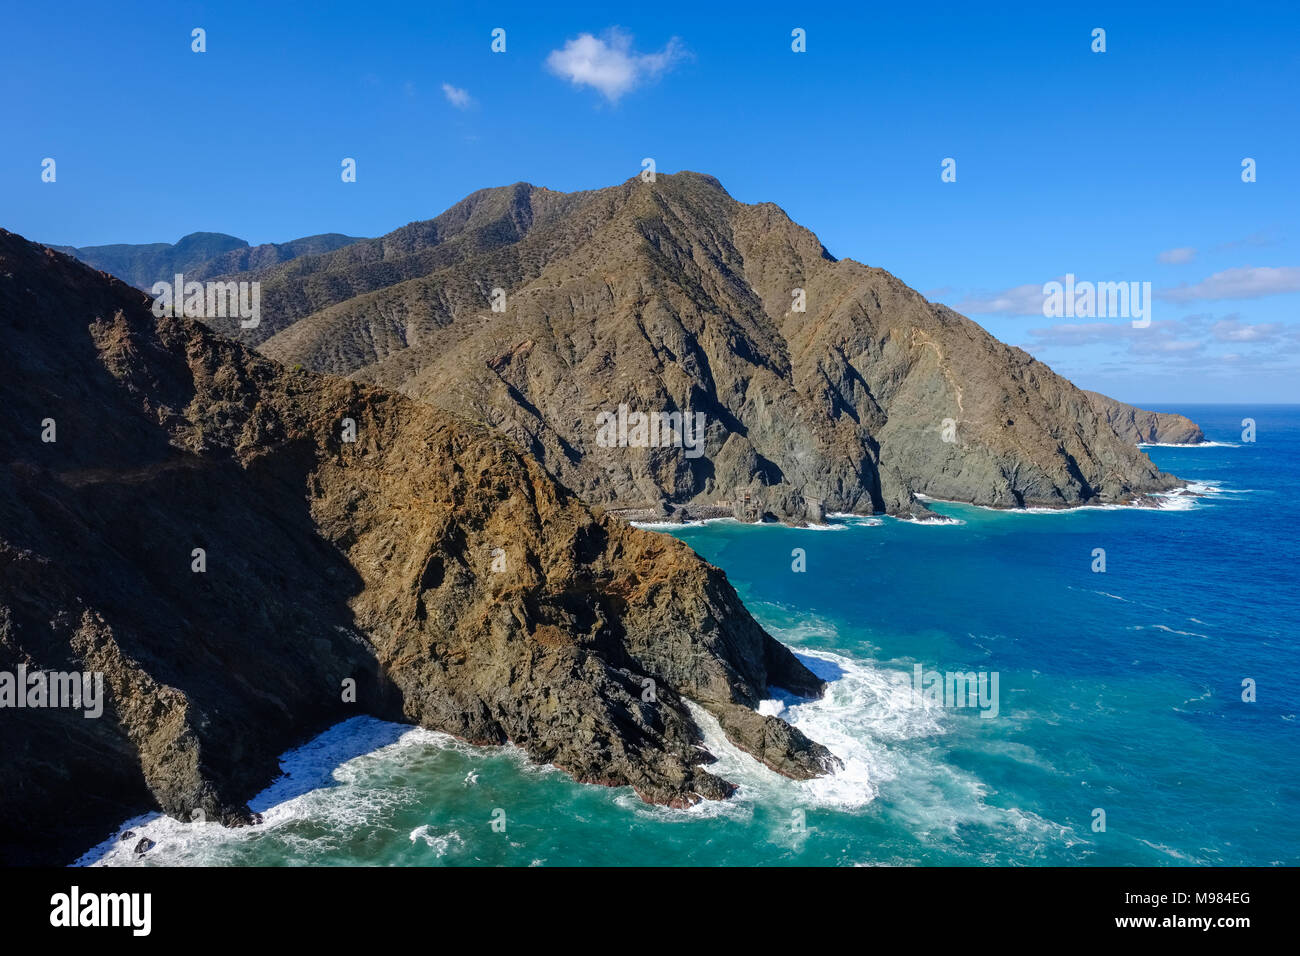 Spain, Canary Islands, La Gomera, Coast near Vallehermoso, View from Punta de Sepultura Stock Photo